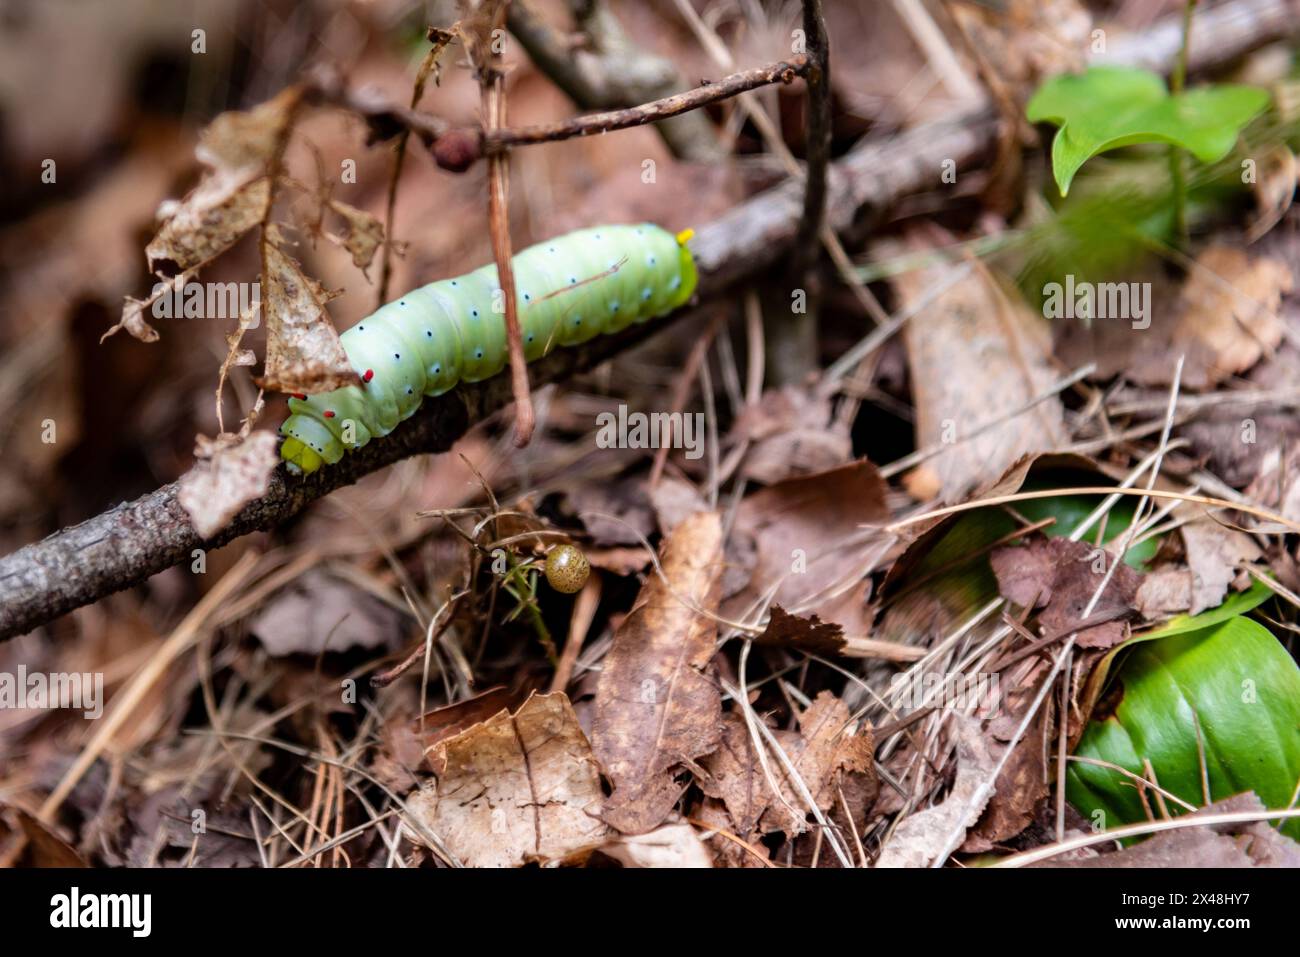 Un singolo bruco di seta promethea caccia di più foglie da mangiare prima di pupare. Foto Stock